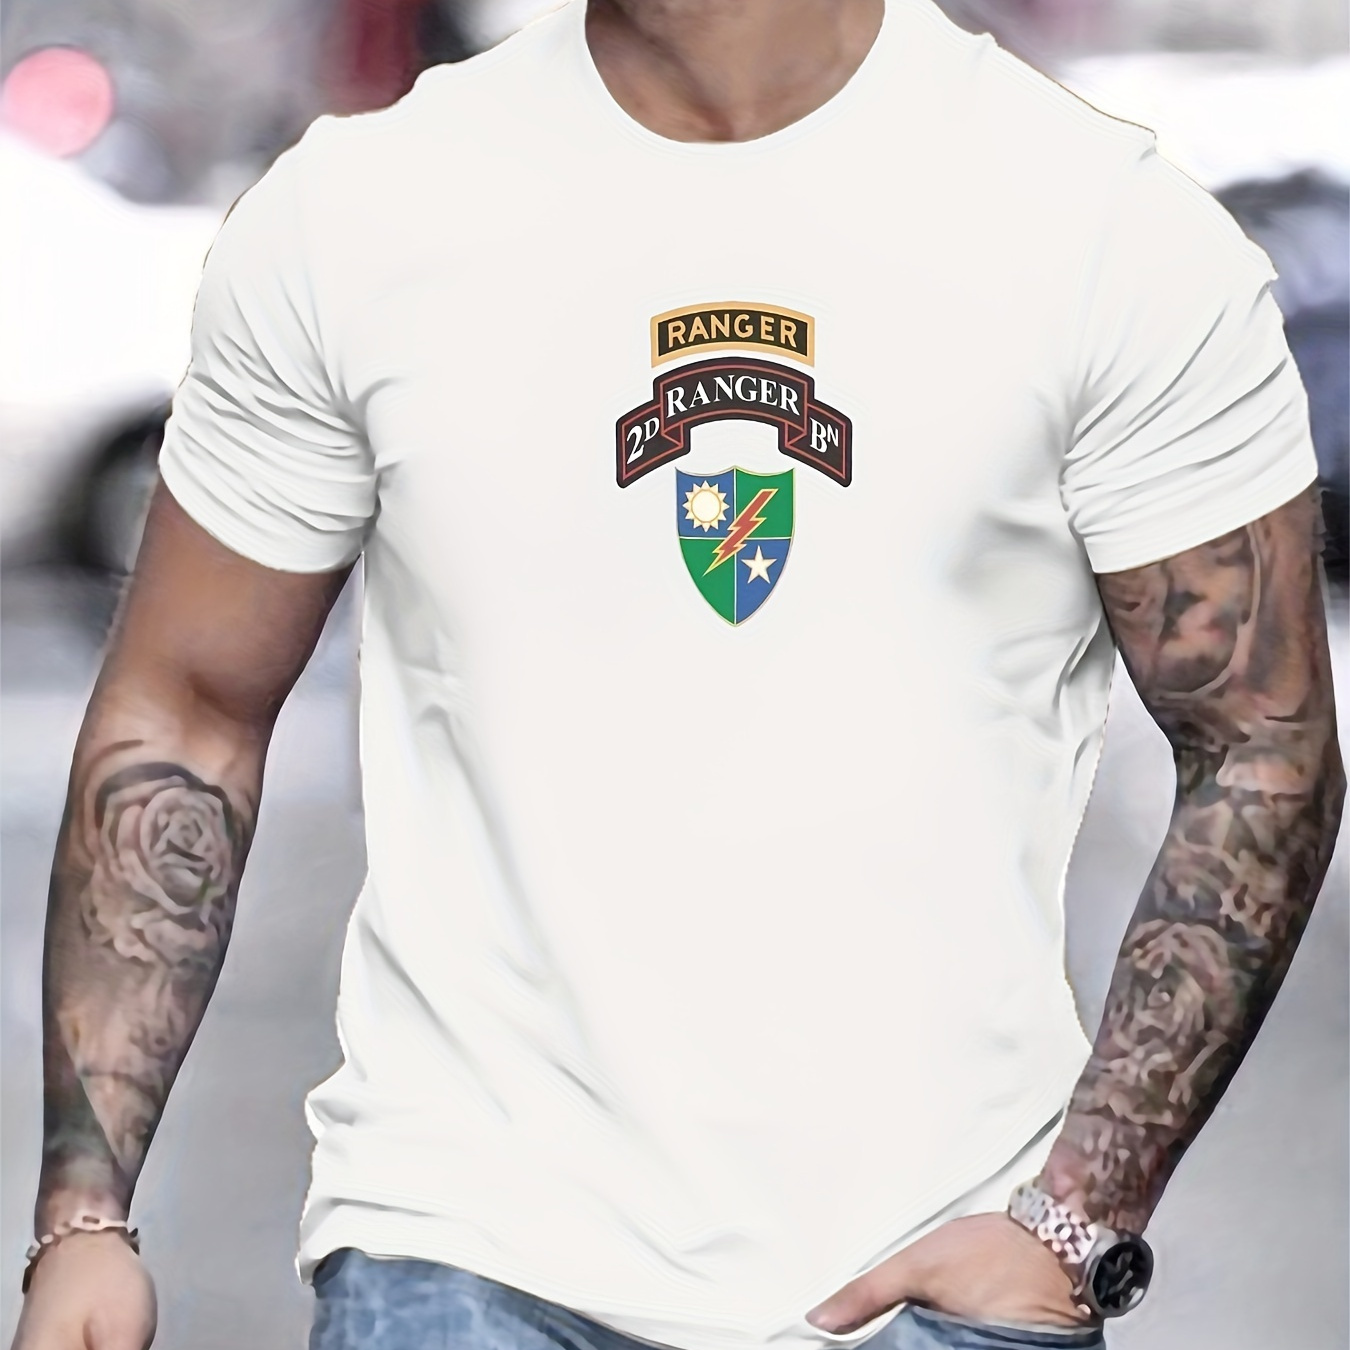 

Ranger Badge Pattern T-shirt, Tees For Men, Casual Short Sleeve T-shirt For Summer